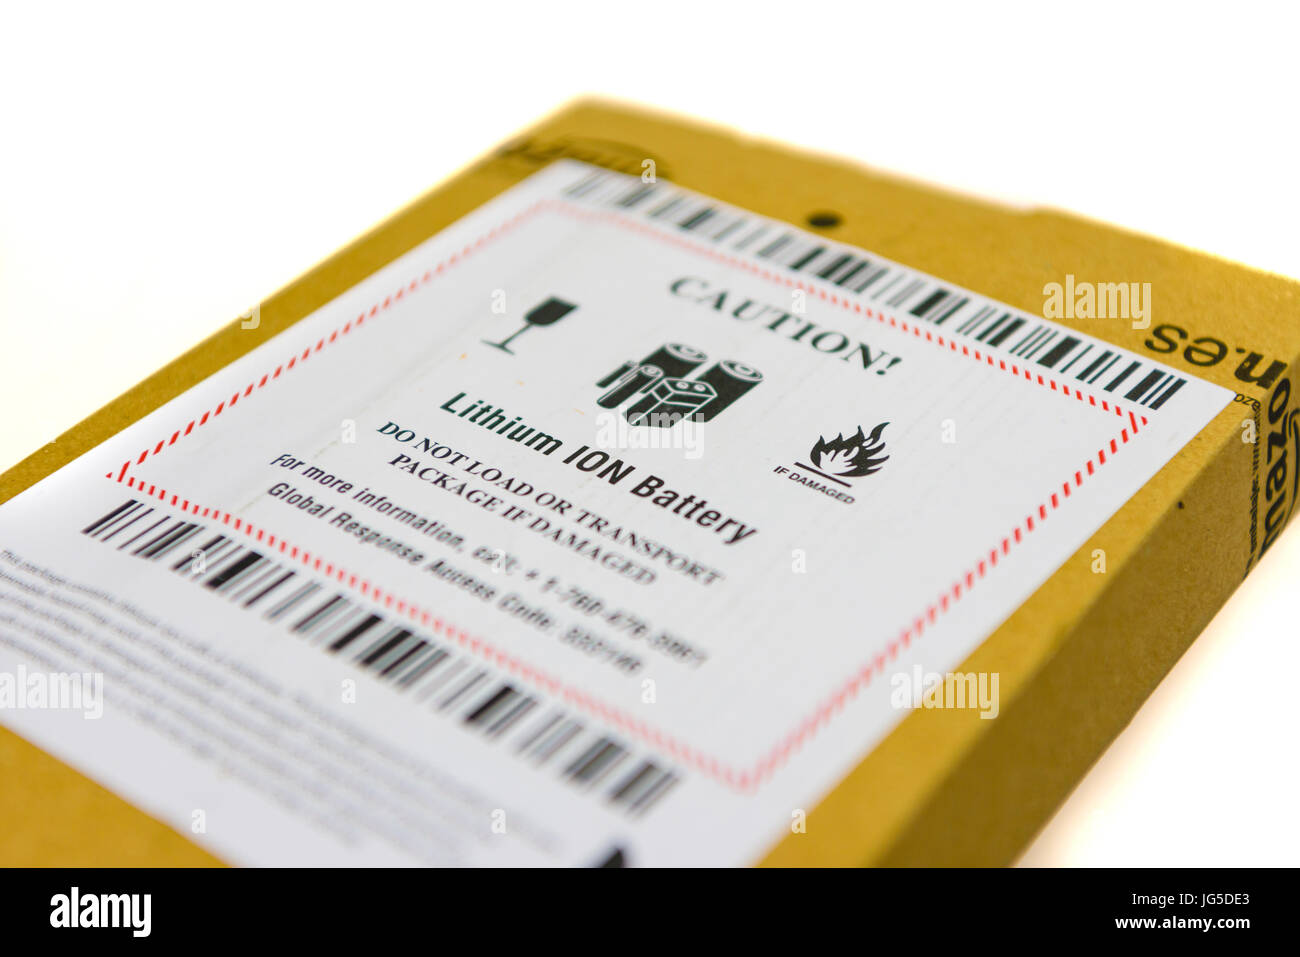 Paket von Amazon mit einem Aufkleber Warnung, dass das Paket einen  Lithium-Ionen-Akku enthält, und nicht zu transportieren, wenn das Paket  beschädigt ist Stockfotografie - Alamy